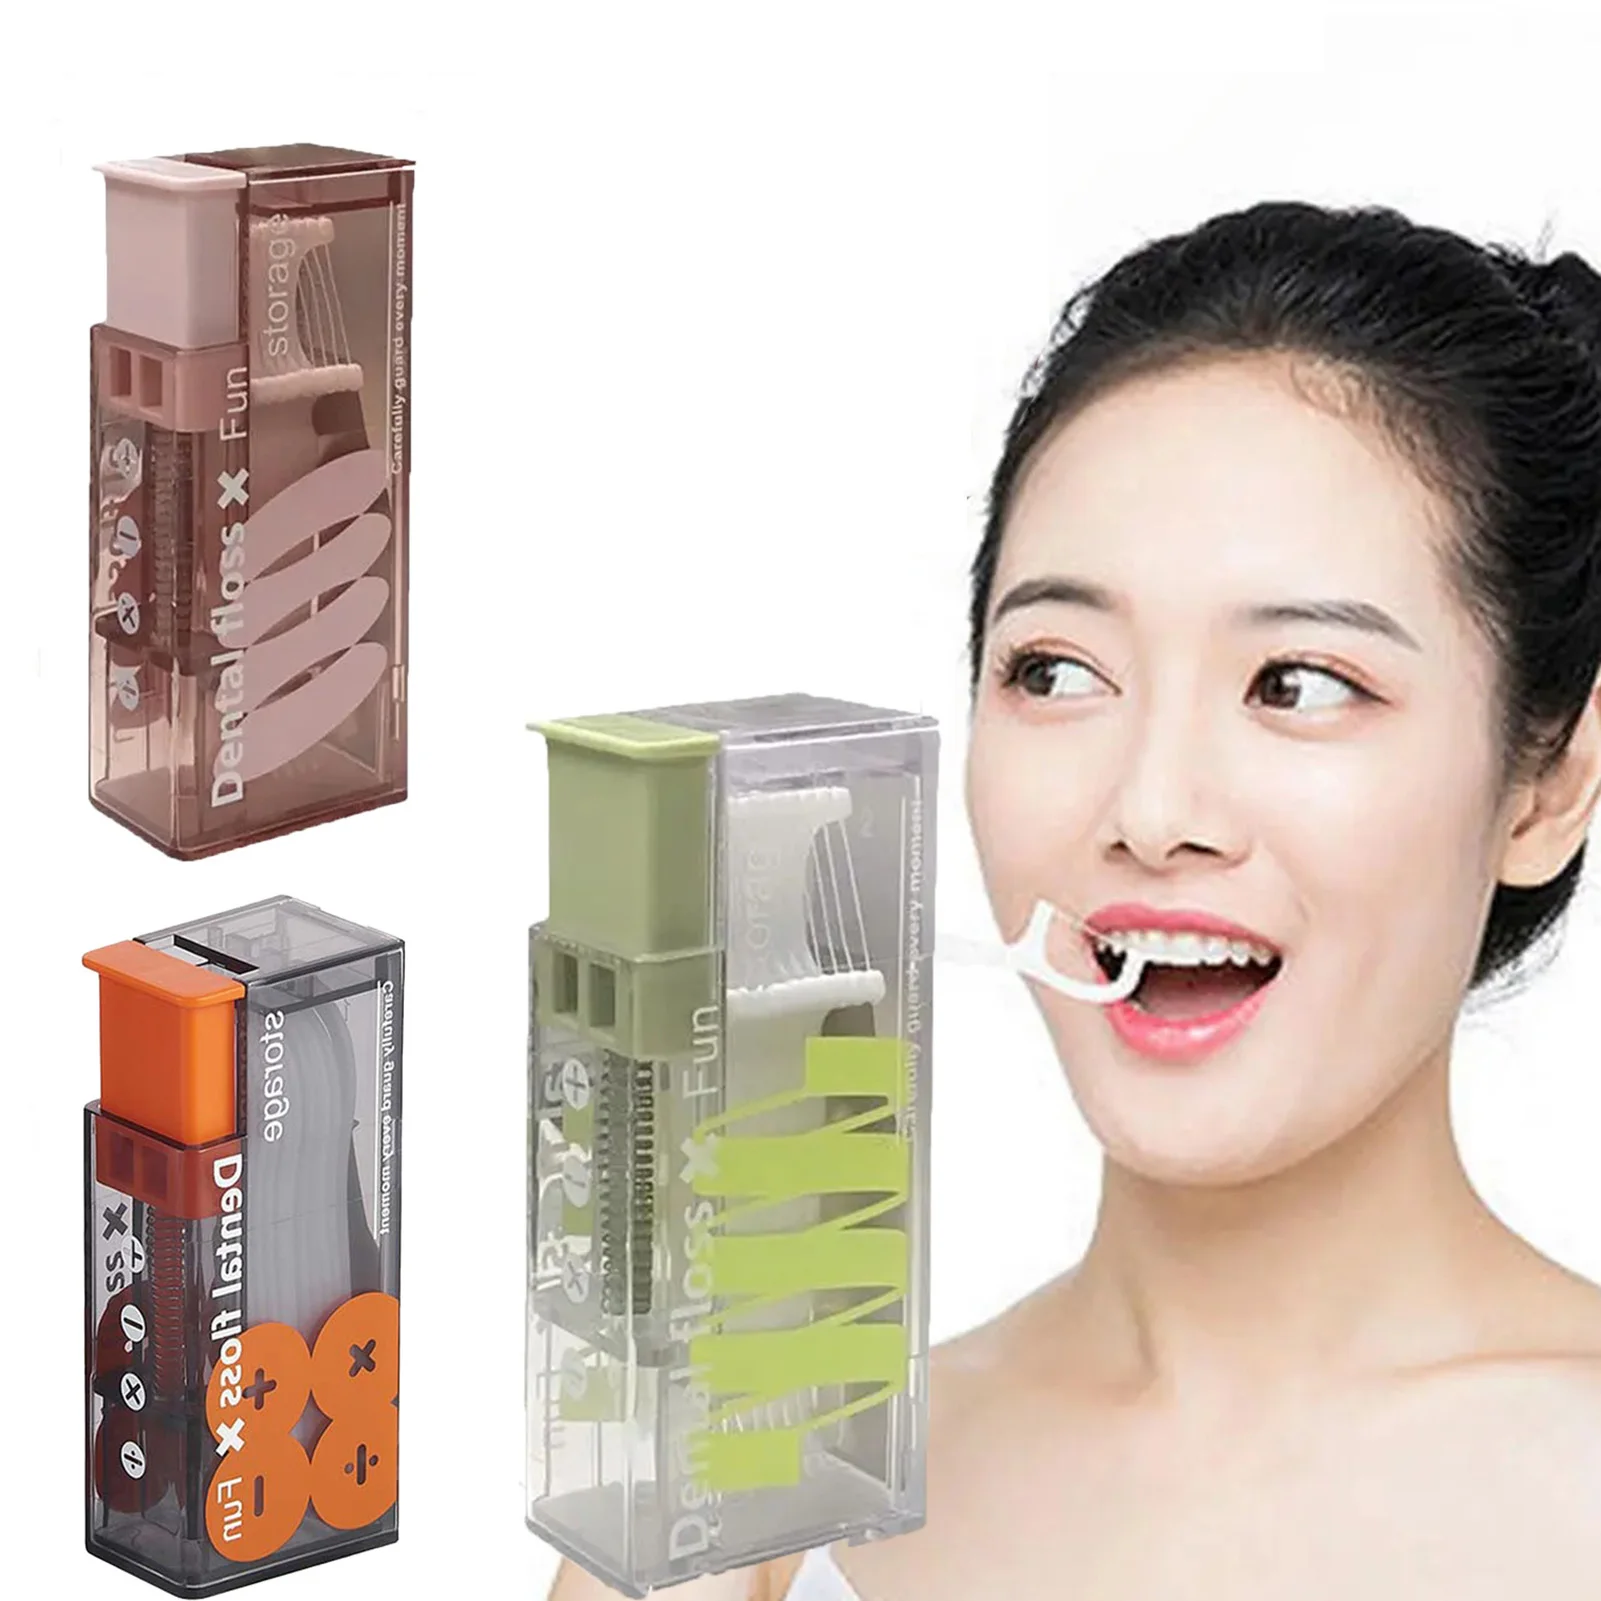 

Portable Smart Dental Floss Holder Odorless Interdental Brush Floss Storage Case for Family Hotel Restaurant Travel EIG88